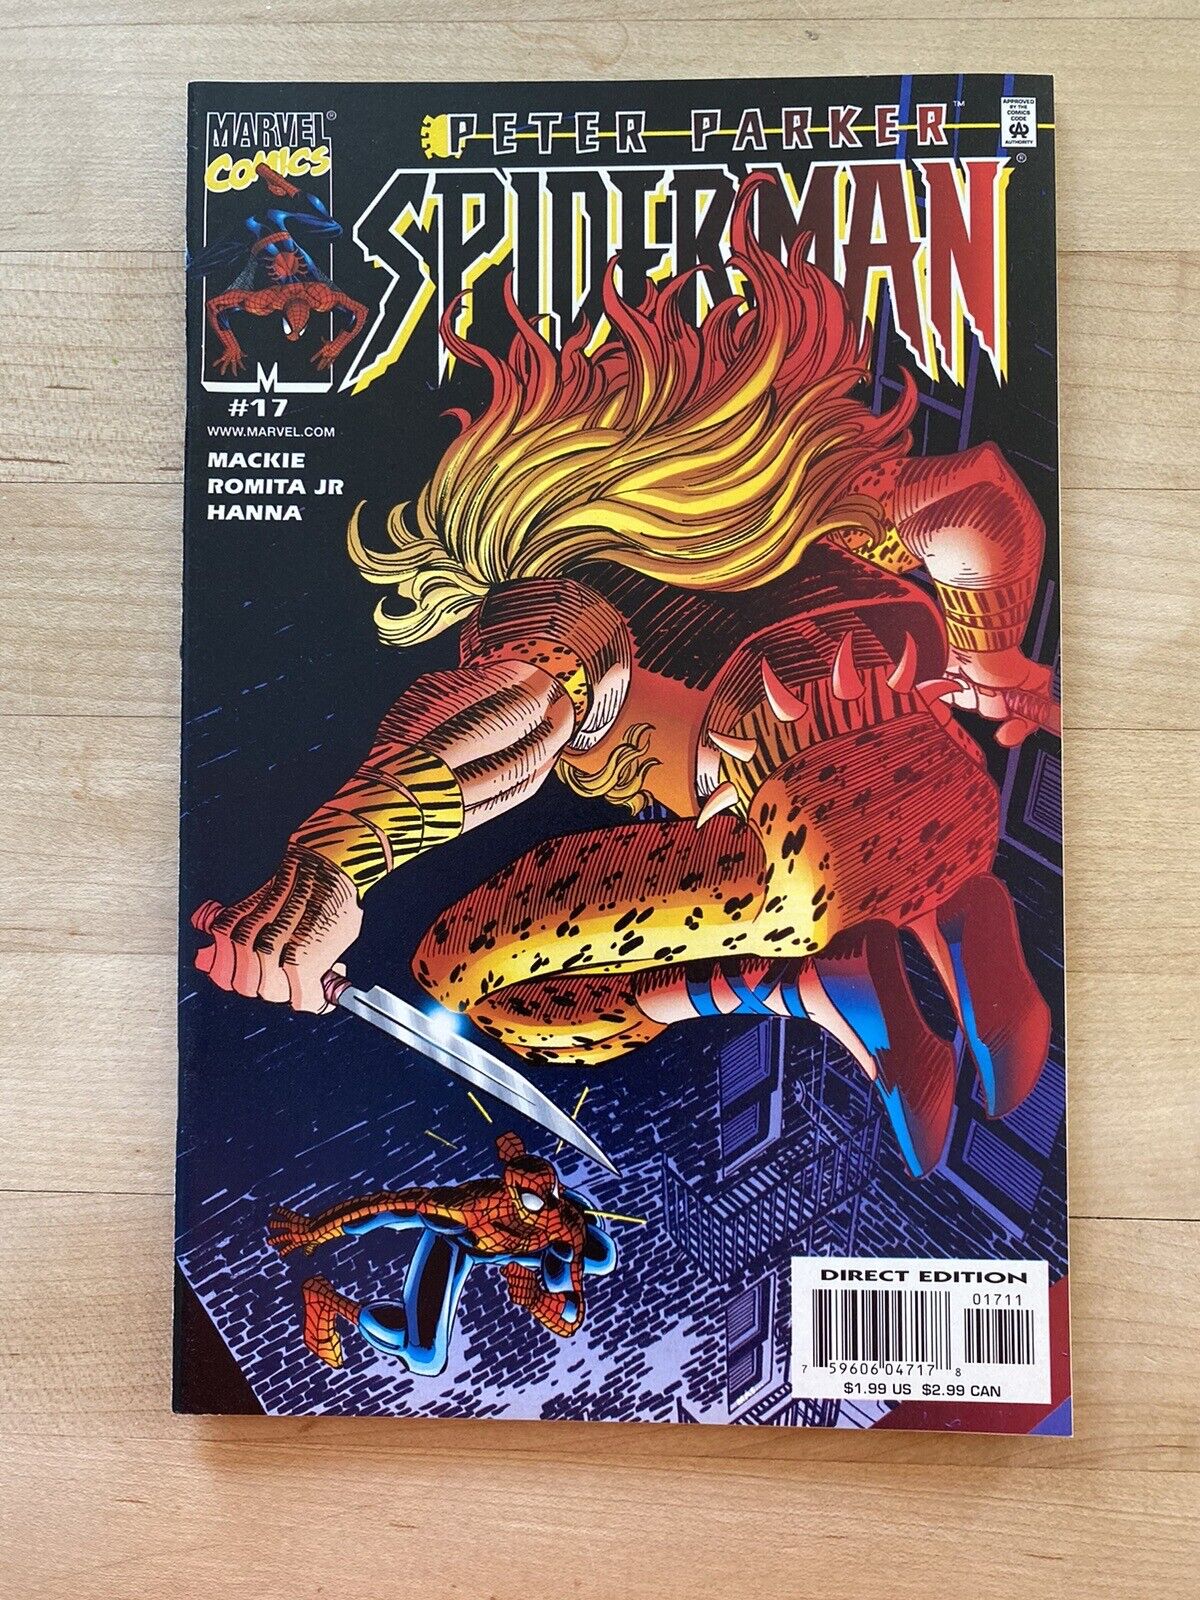 PETER PARKER: SPIDER-MAN #17 - KRAVEN THE HUNTER! MARVEL COMICS!